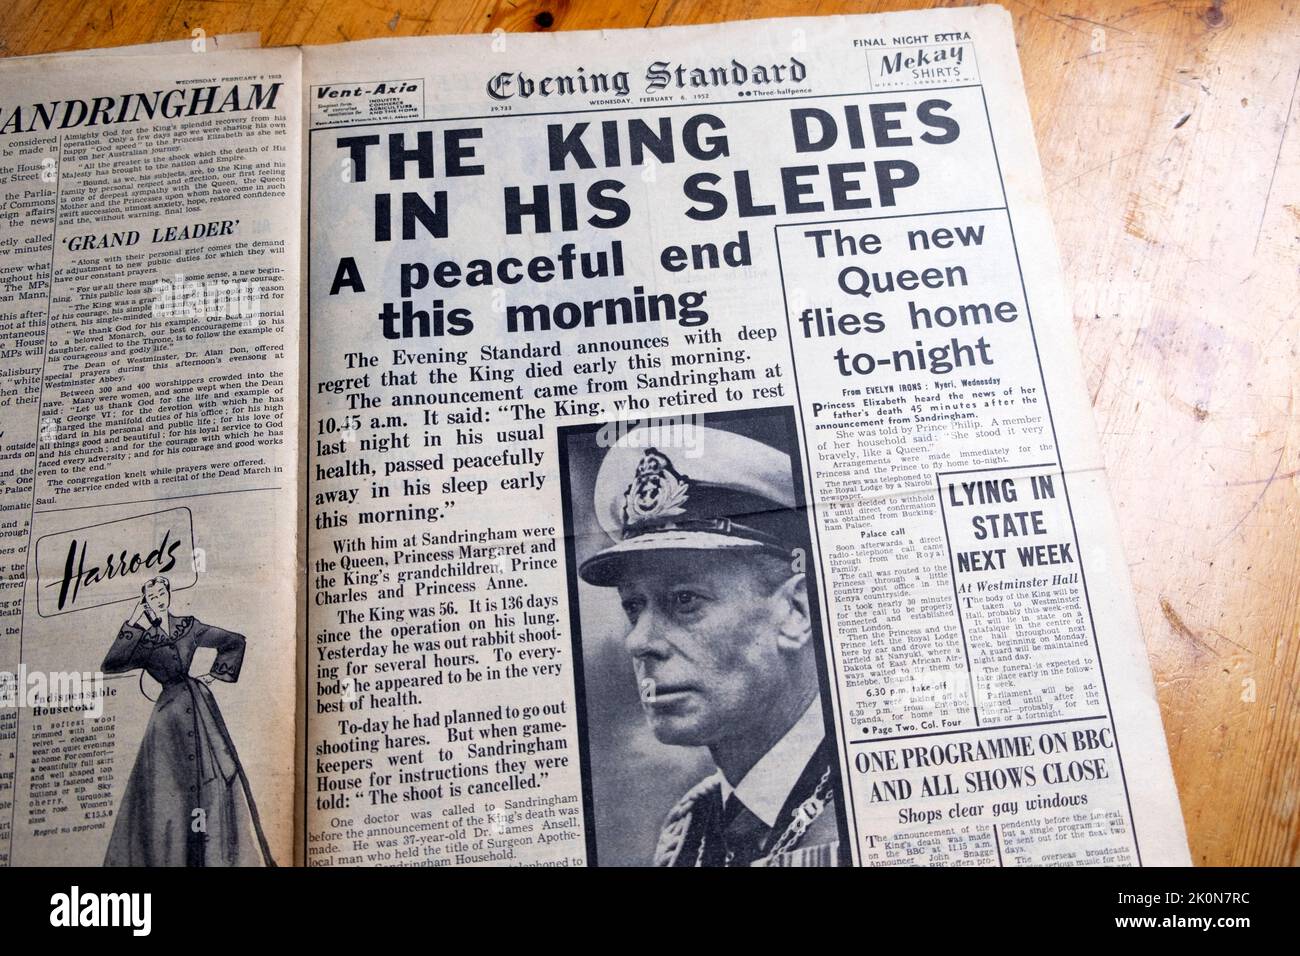 King George VI Titelseite Evening Standard headline 'der König stirbt in seinem Schlaf' und 'die neue Königin fliegt nach Hause' Februar 6 1952 London England Großbritannien Stockfoto